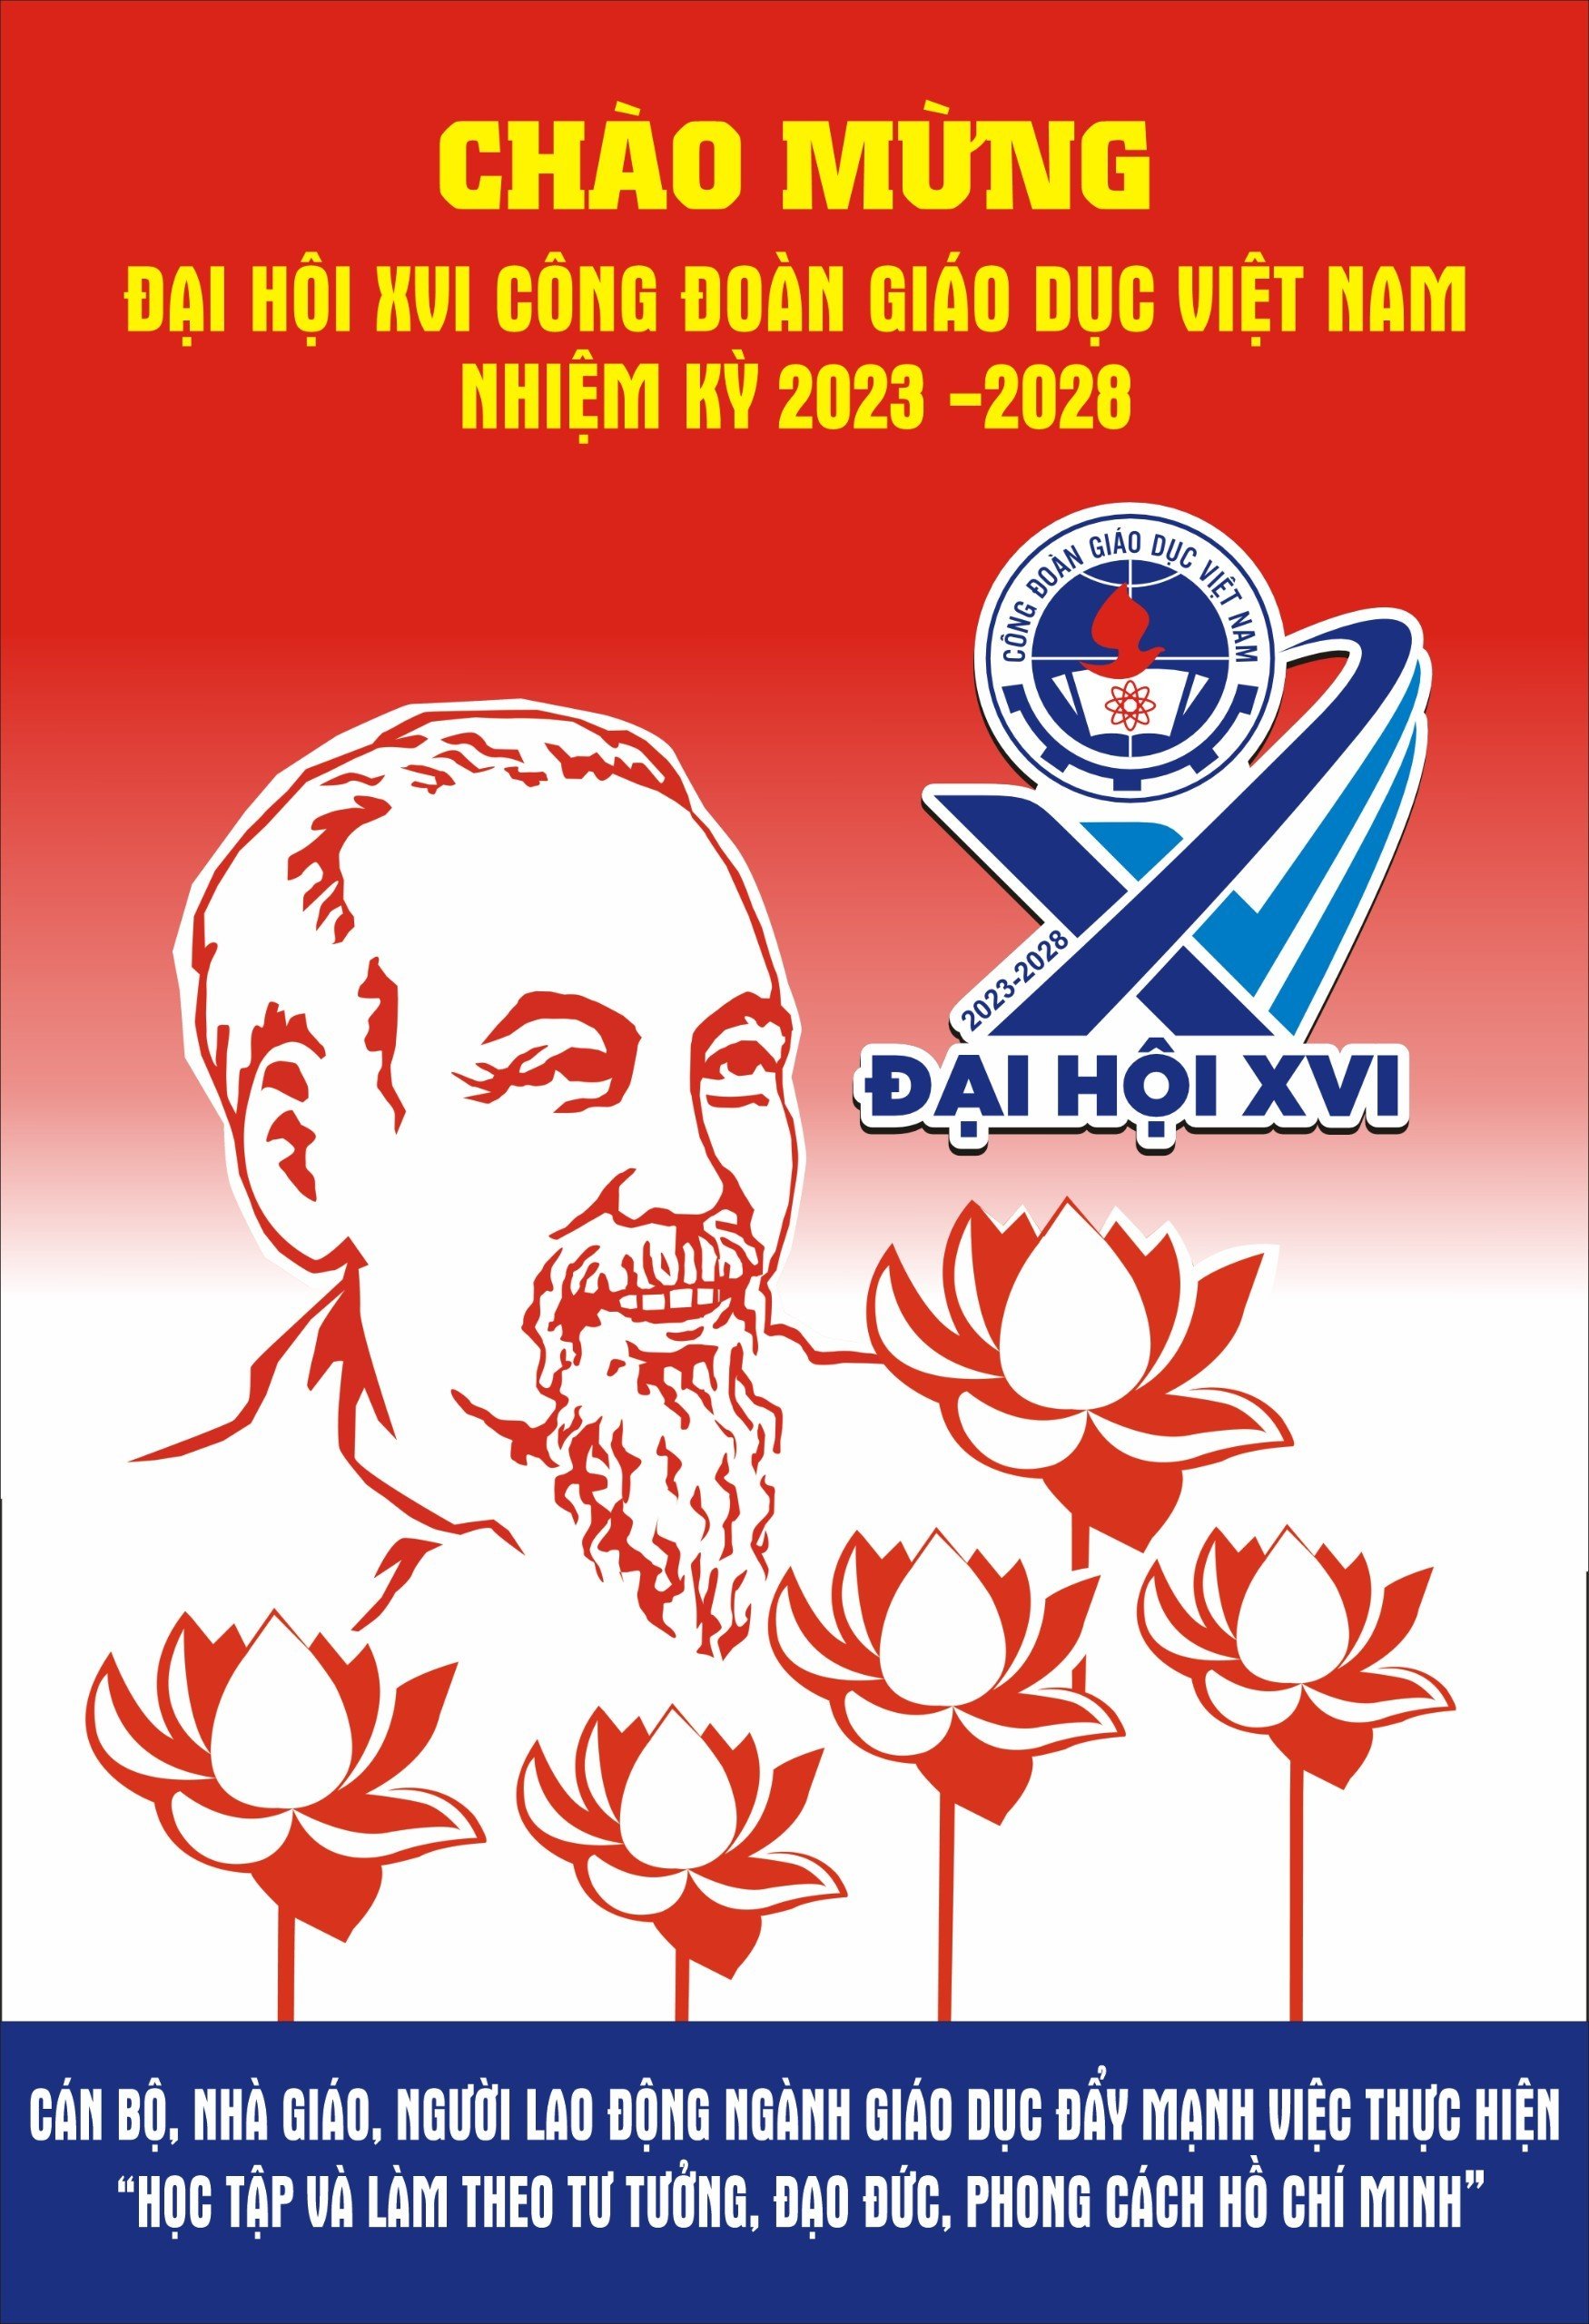 Chào mừng Đại hội XVI Công đoàn giáo dục Việt Nam nhiệm kỳ 2023-2028